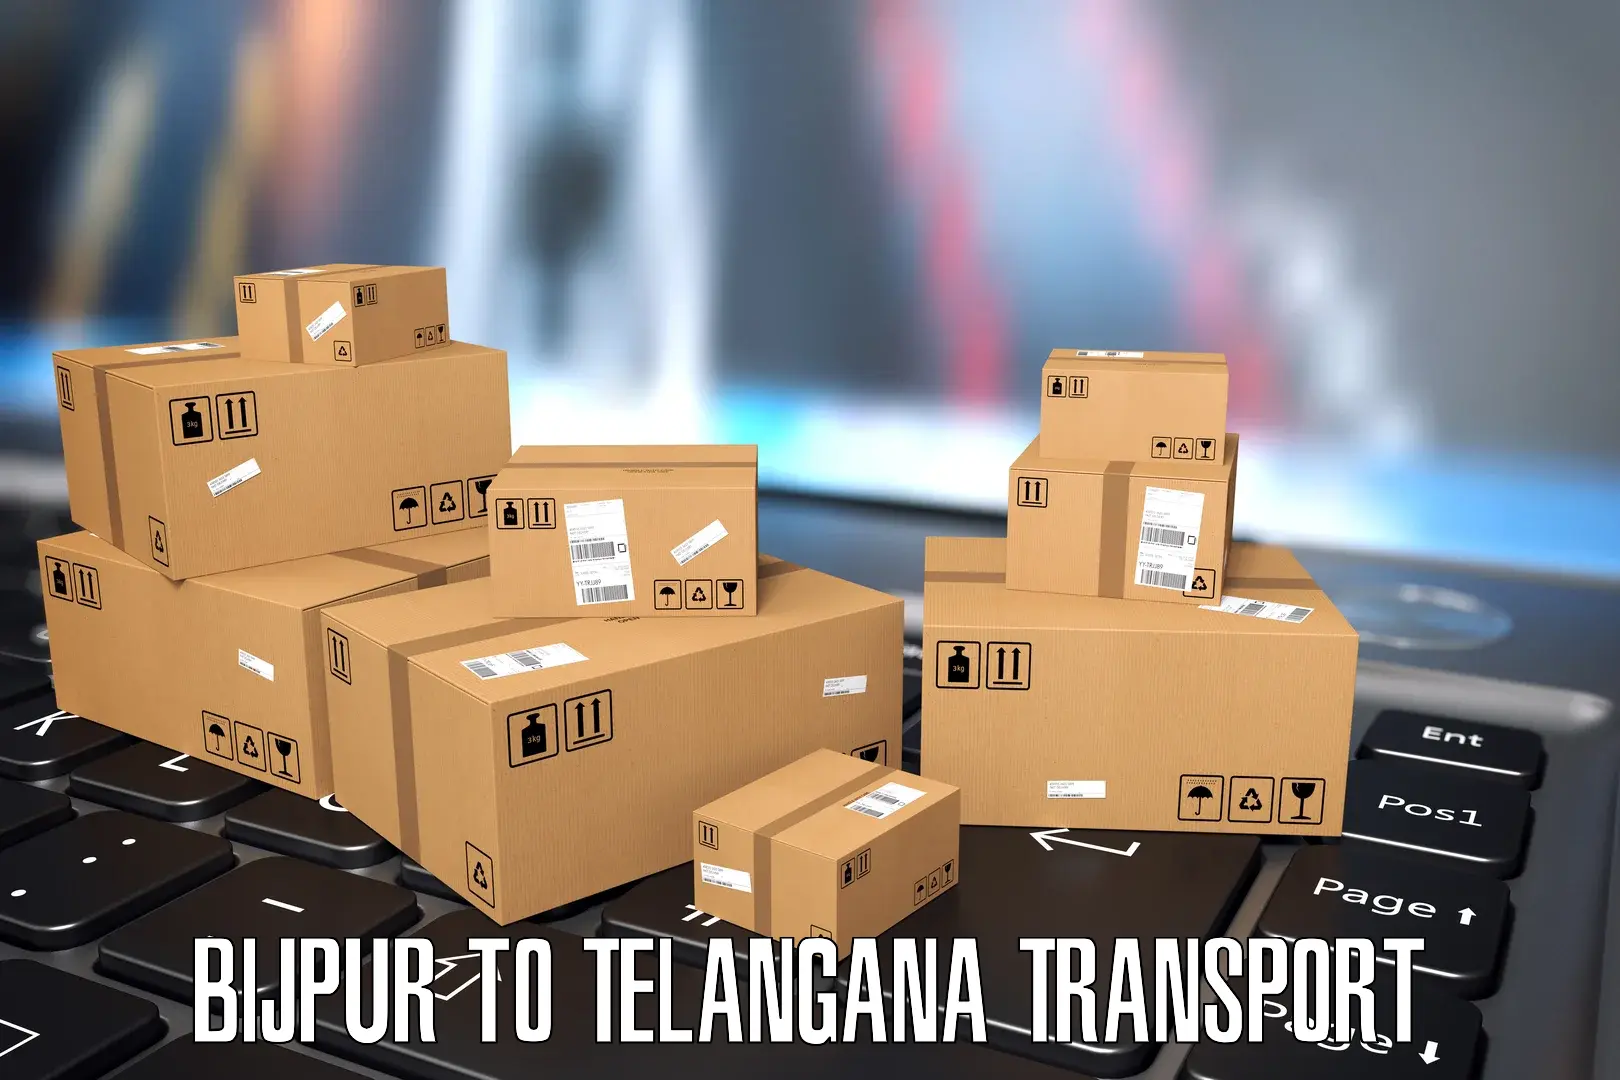 Luggage transport services Bijpur to Chennur